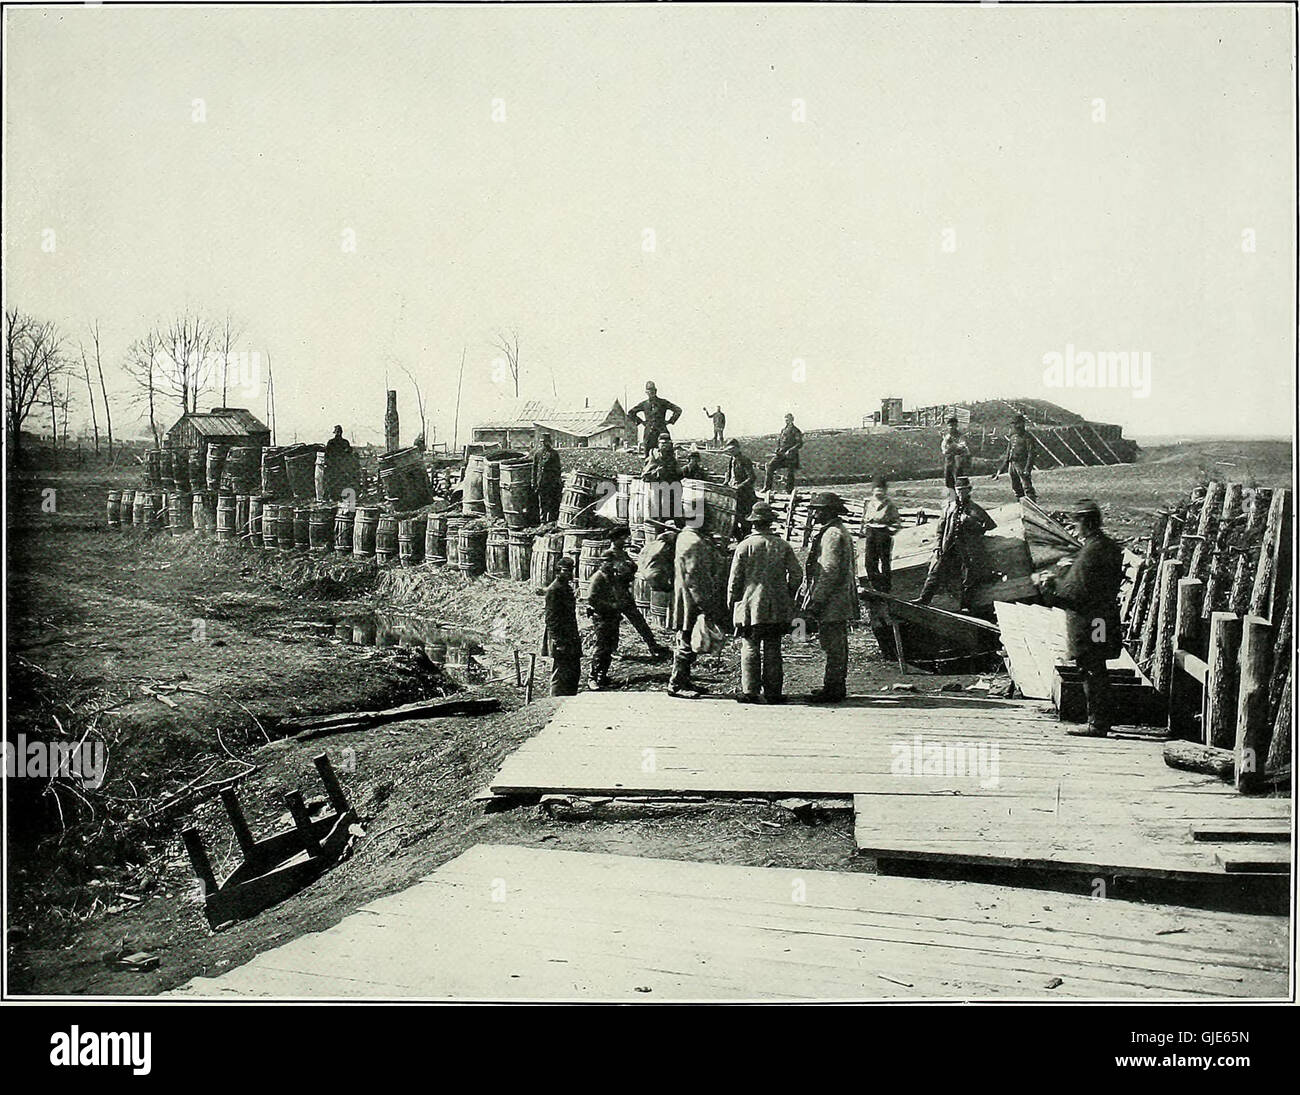 Las fotografías originales tomadas en los campos de batalla durante la Guerra Civil de los Estados Unidos (1907) Foto de stock